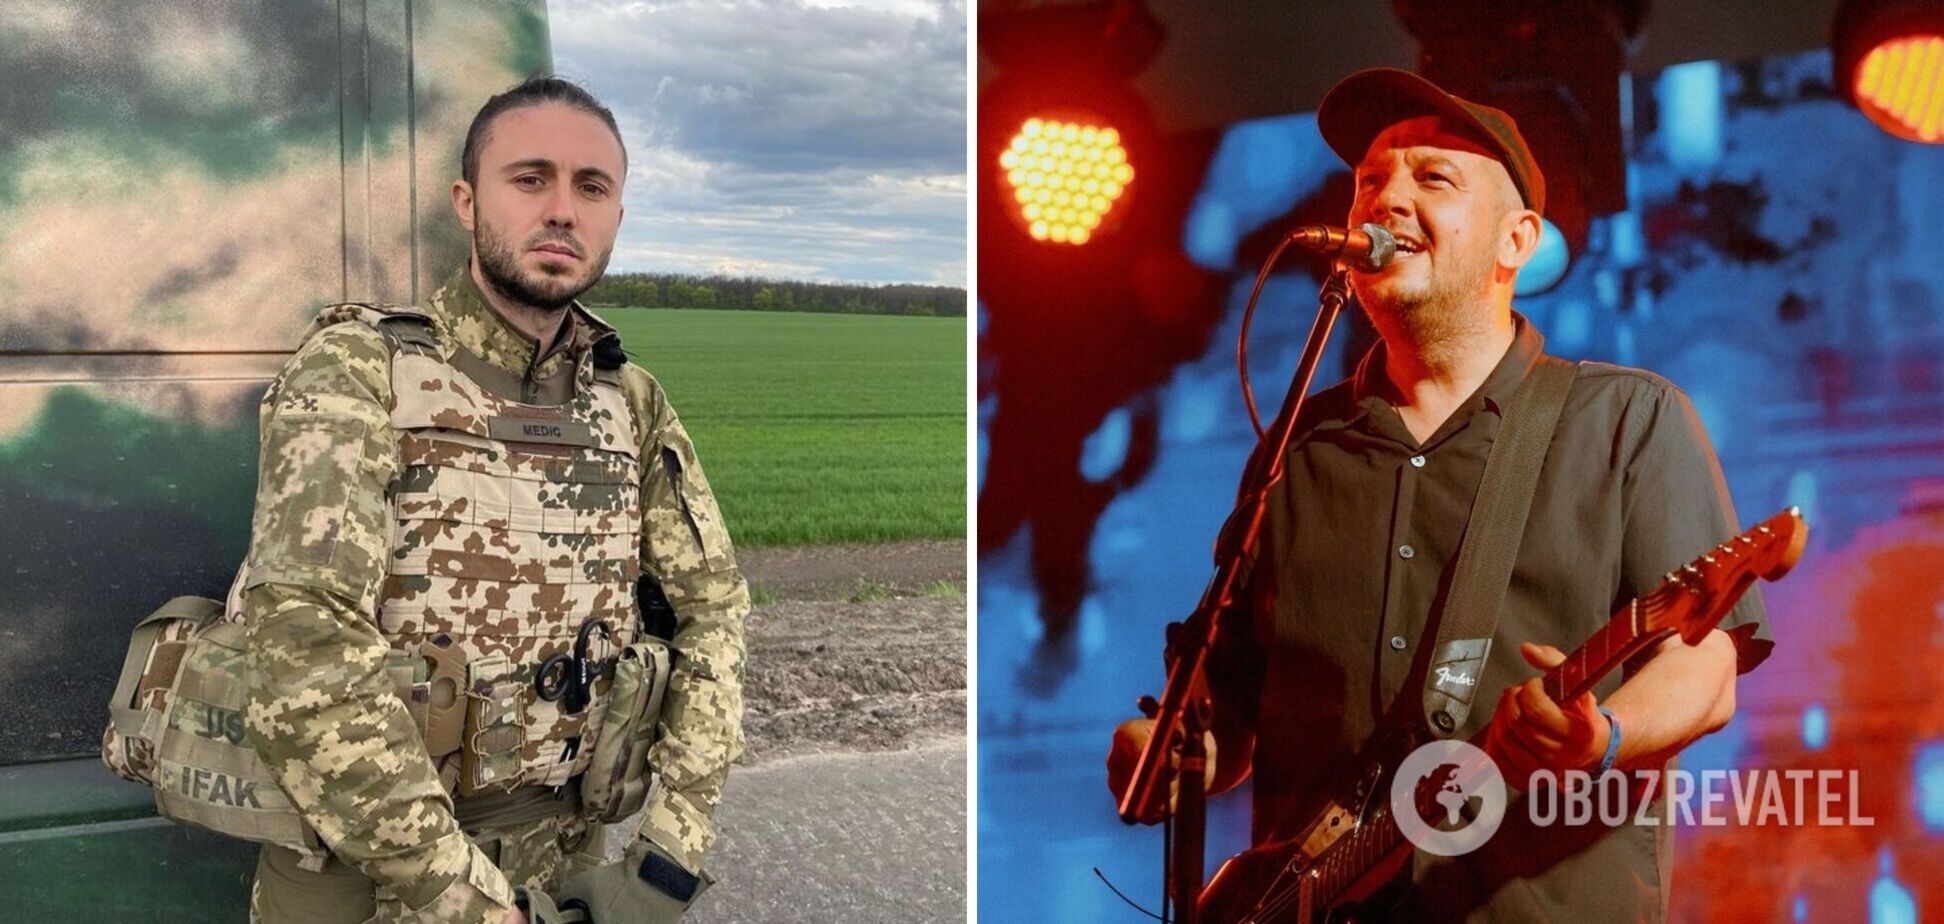 'Ми були близькі': Тарас Тополя назвав друга-музиканта з Росії, який виявився запеклим путіністом